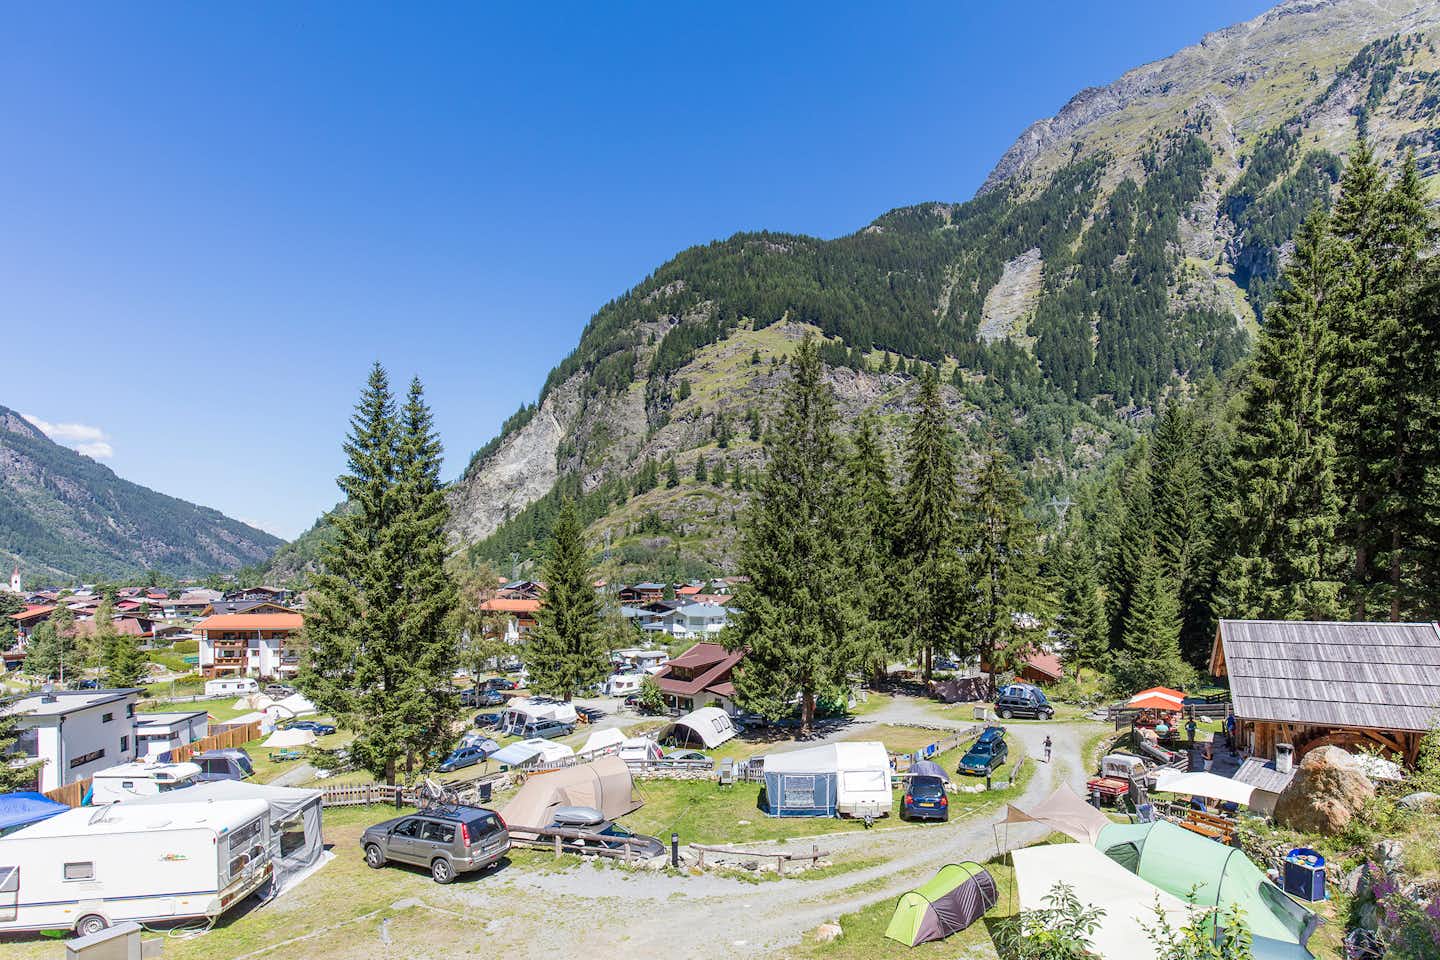 Ötztaler Naturcamping -  Übersicht auf dem Campingplatz umringt von Bergen